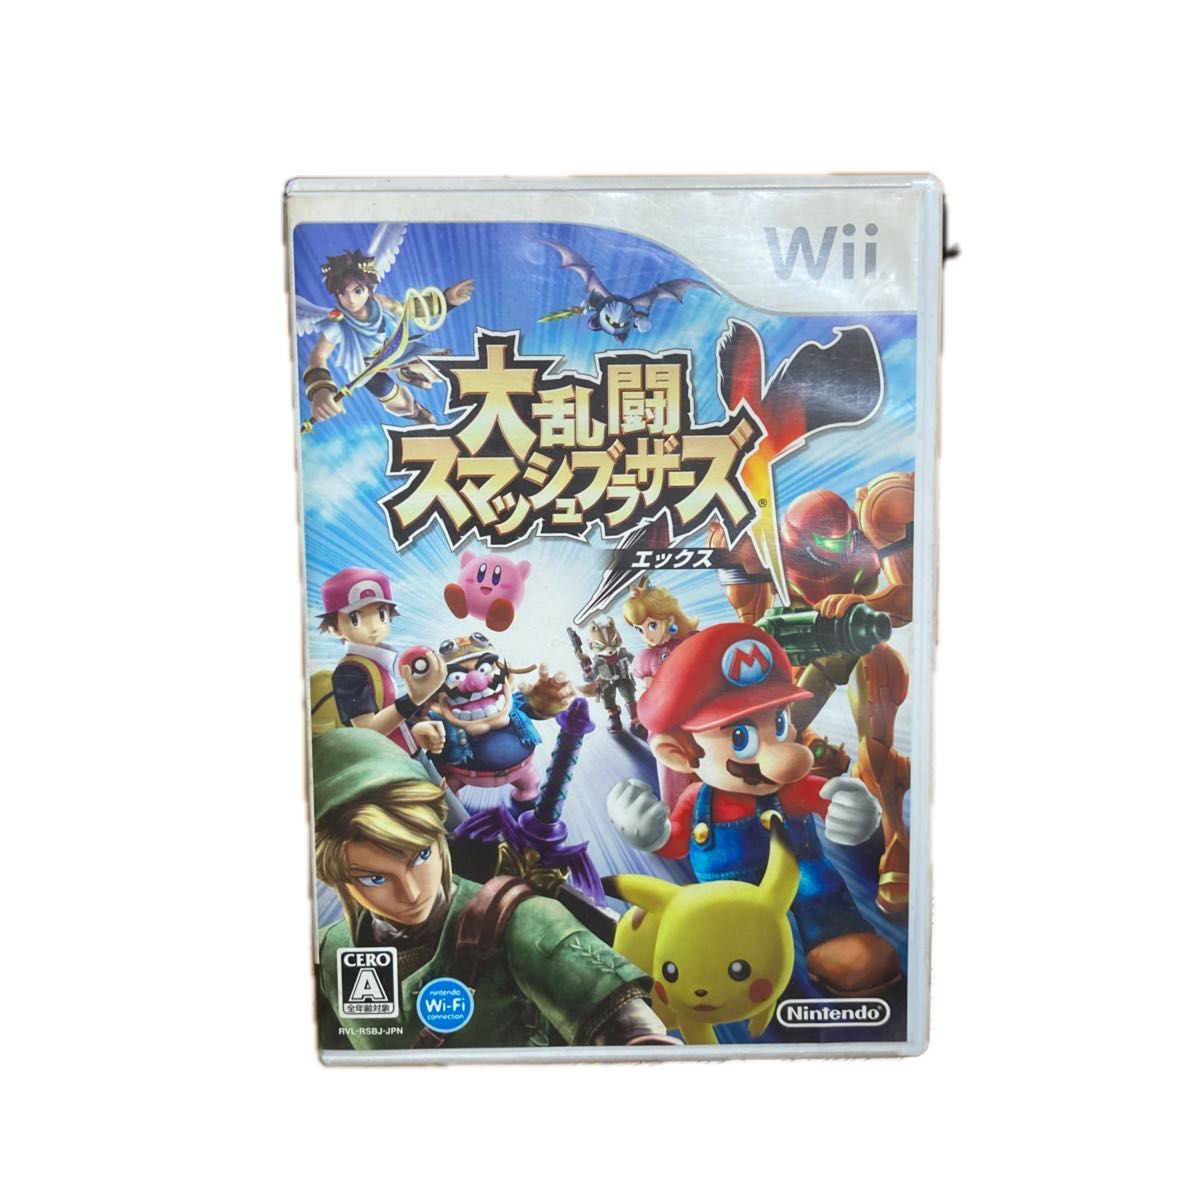 【Wii】 大乱闘スマッシュブラザーズX